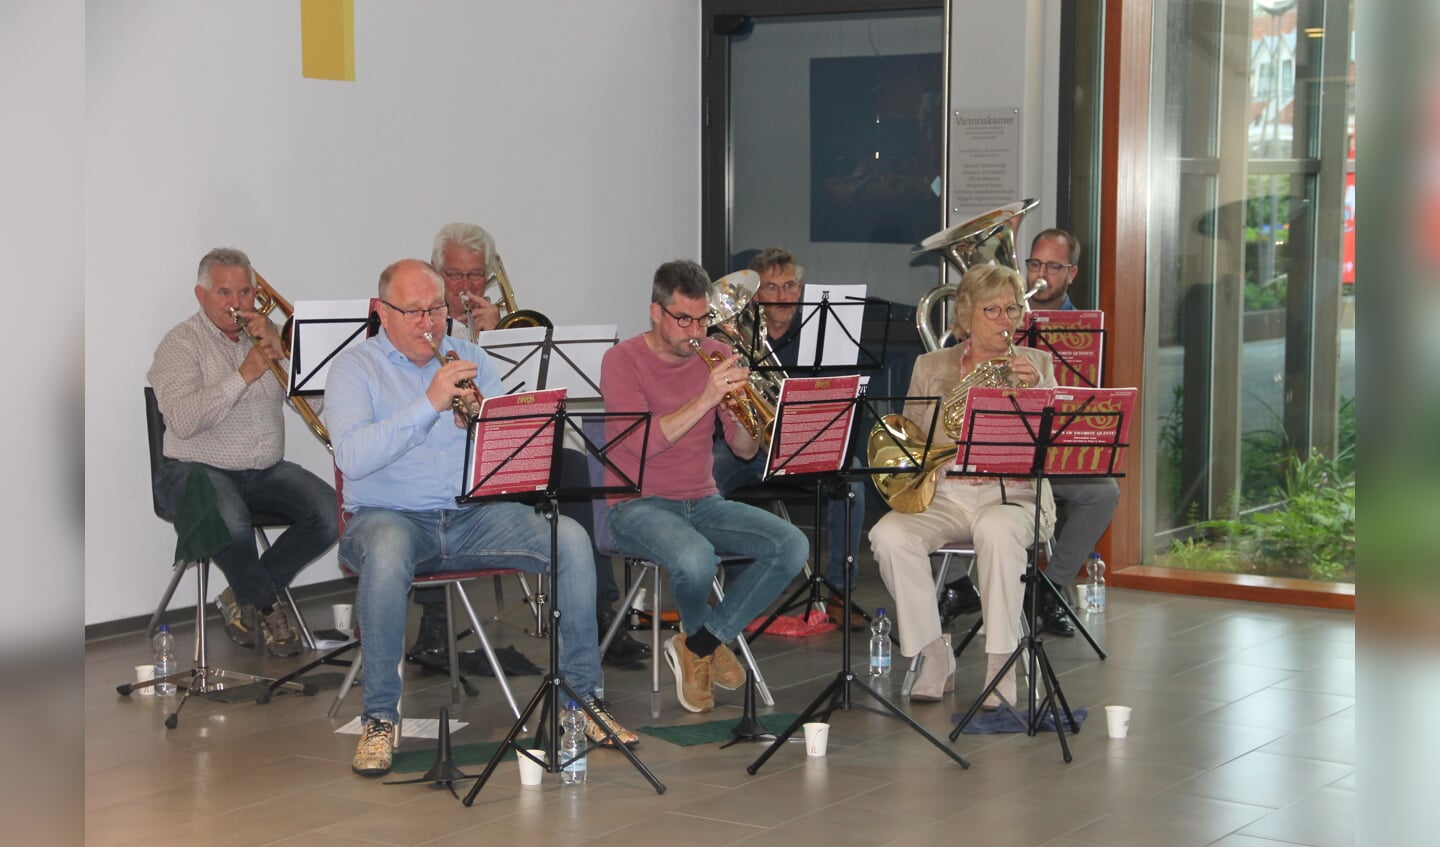 Muzikanten van Excelsior zorgen voor de muzikale omlijsting. Foto: Lineke Voltman

